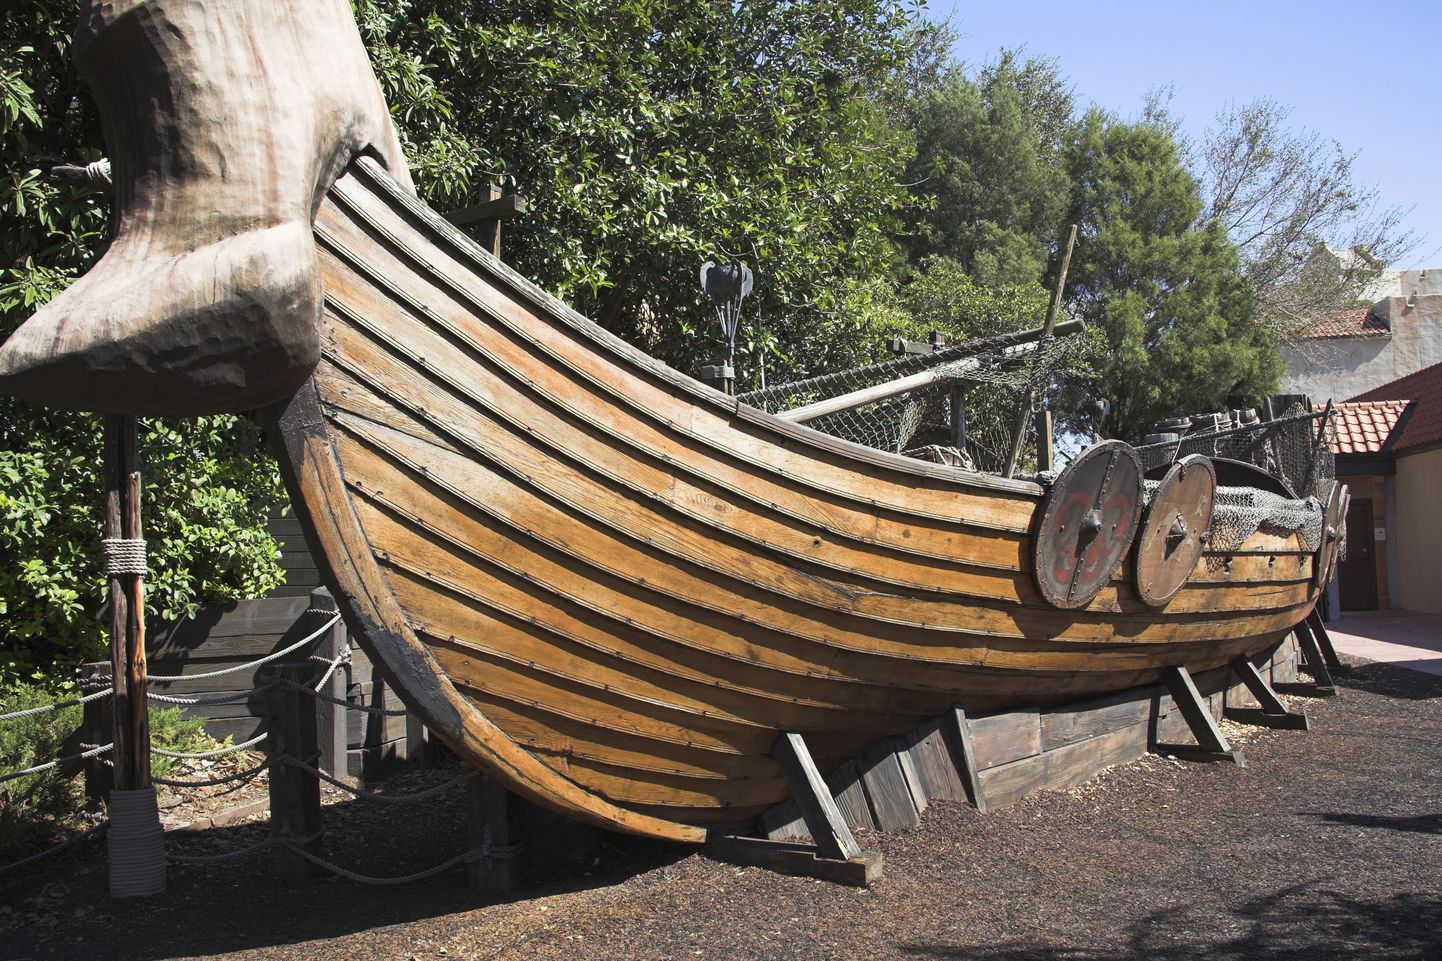 Pilt on illustratiivne. Laevad ja paadid olid viikingite kõige hinnalisem vara. Kõrgest seisusest viiking maeti seepärast oma laeva või paati koos kõigi isiklike eseme­tega.